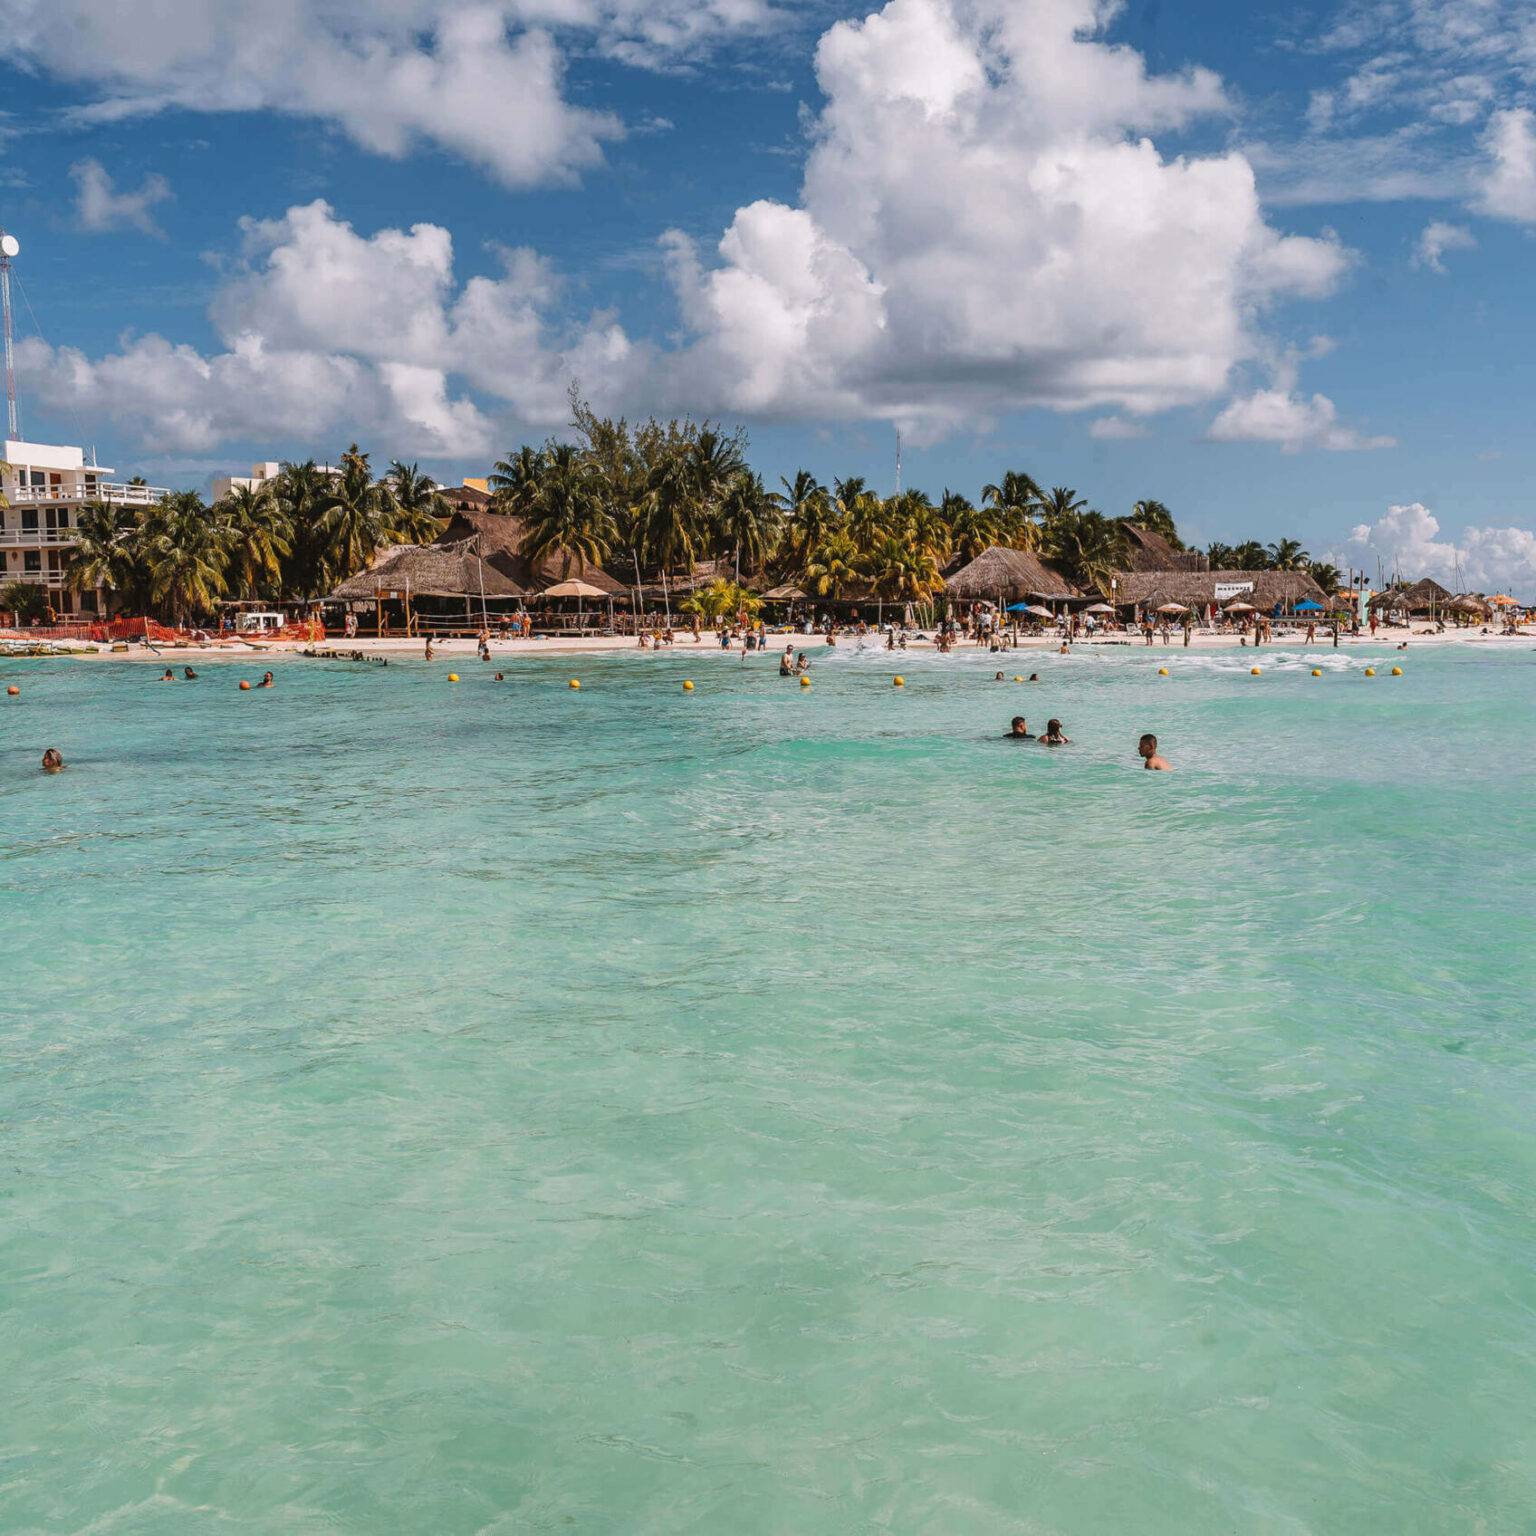 Menschen baden im türkisblauen Wasser am Playa Norte, einem Strand auf Yucatan.